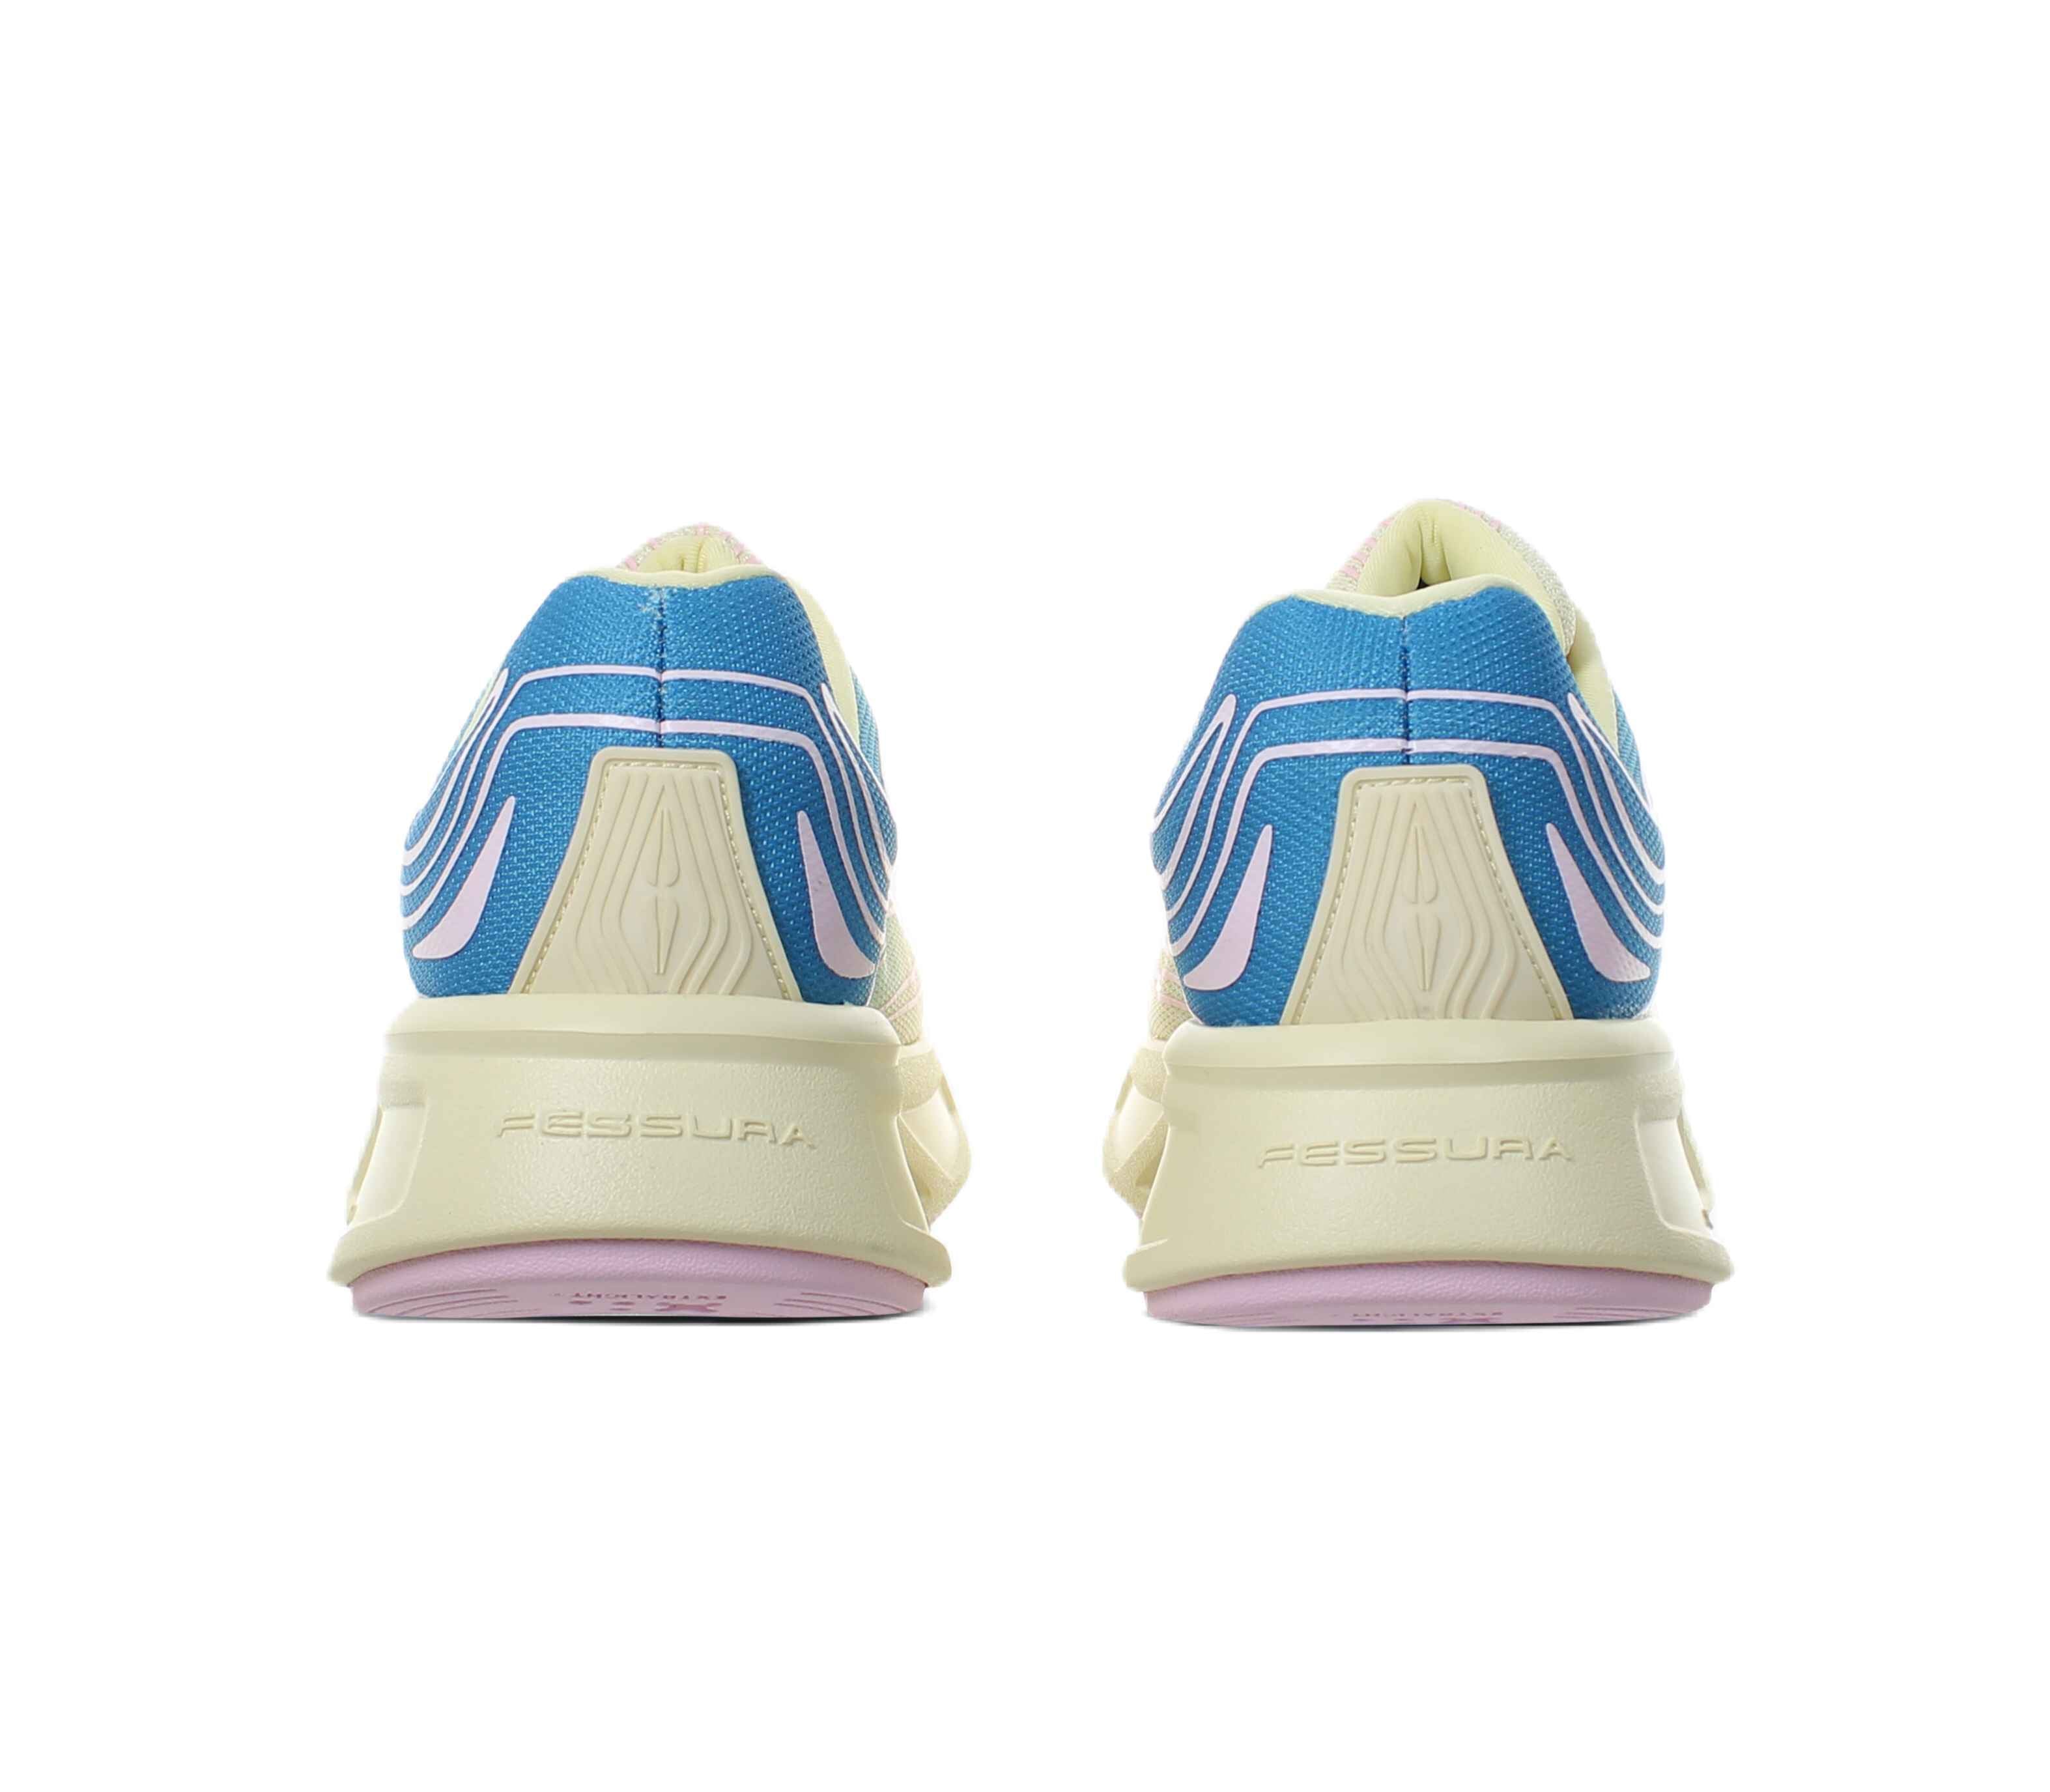 Sneaker FESSURA RUNFLEX #01 - BLUE/PINK